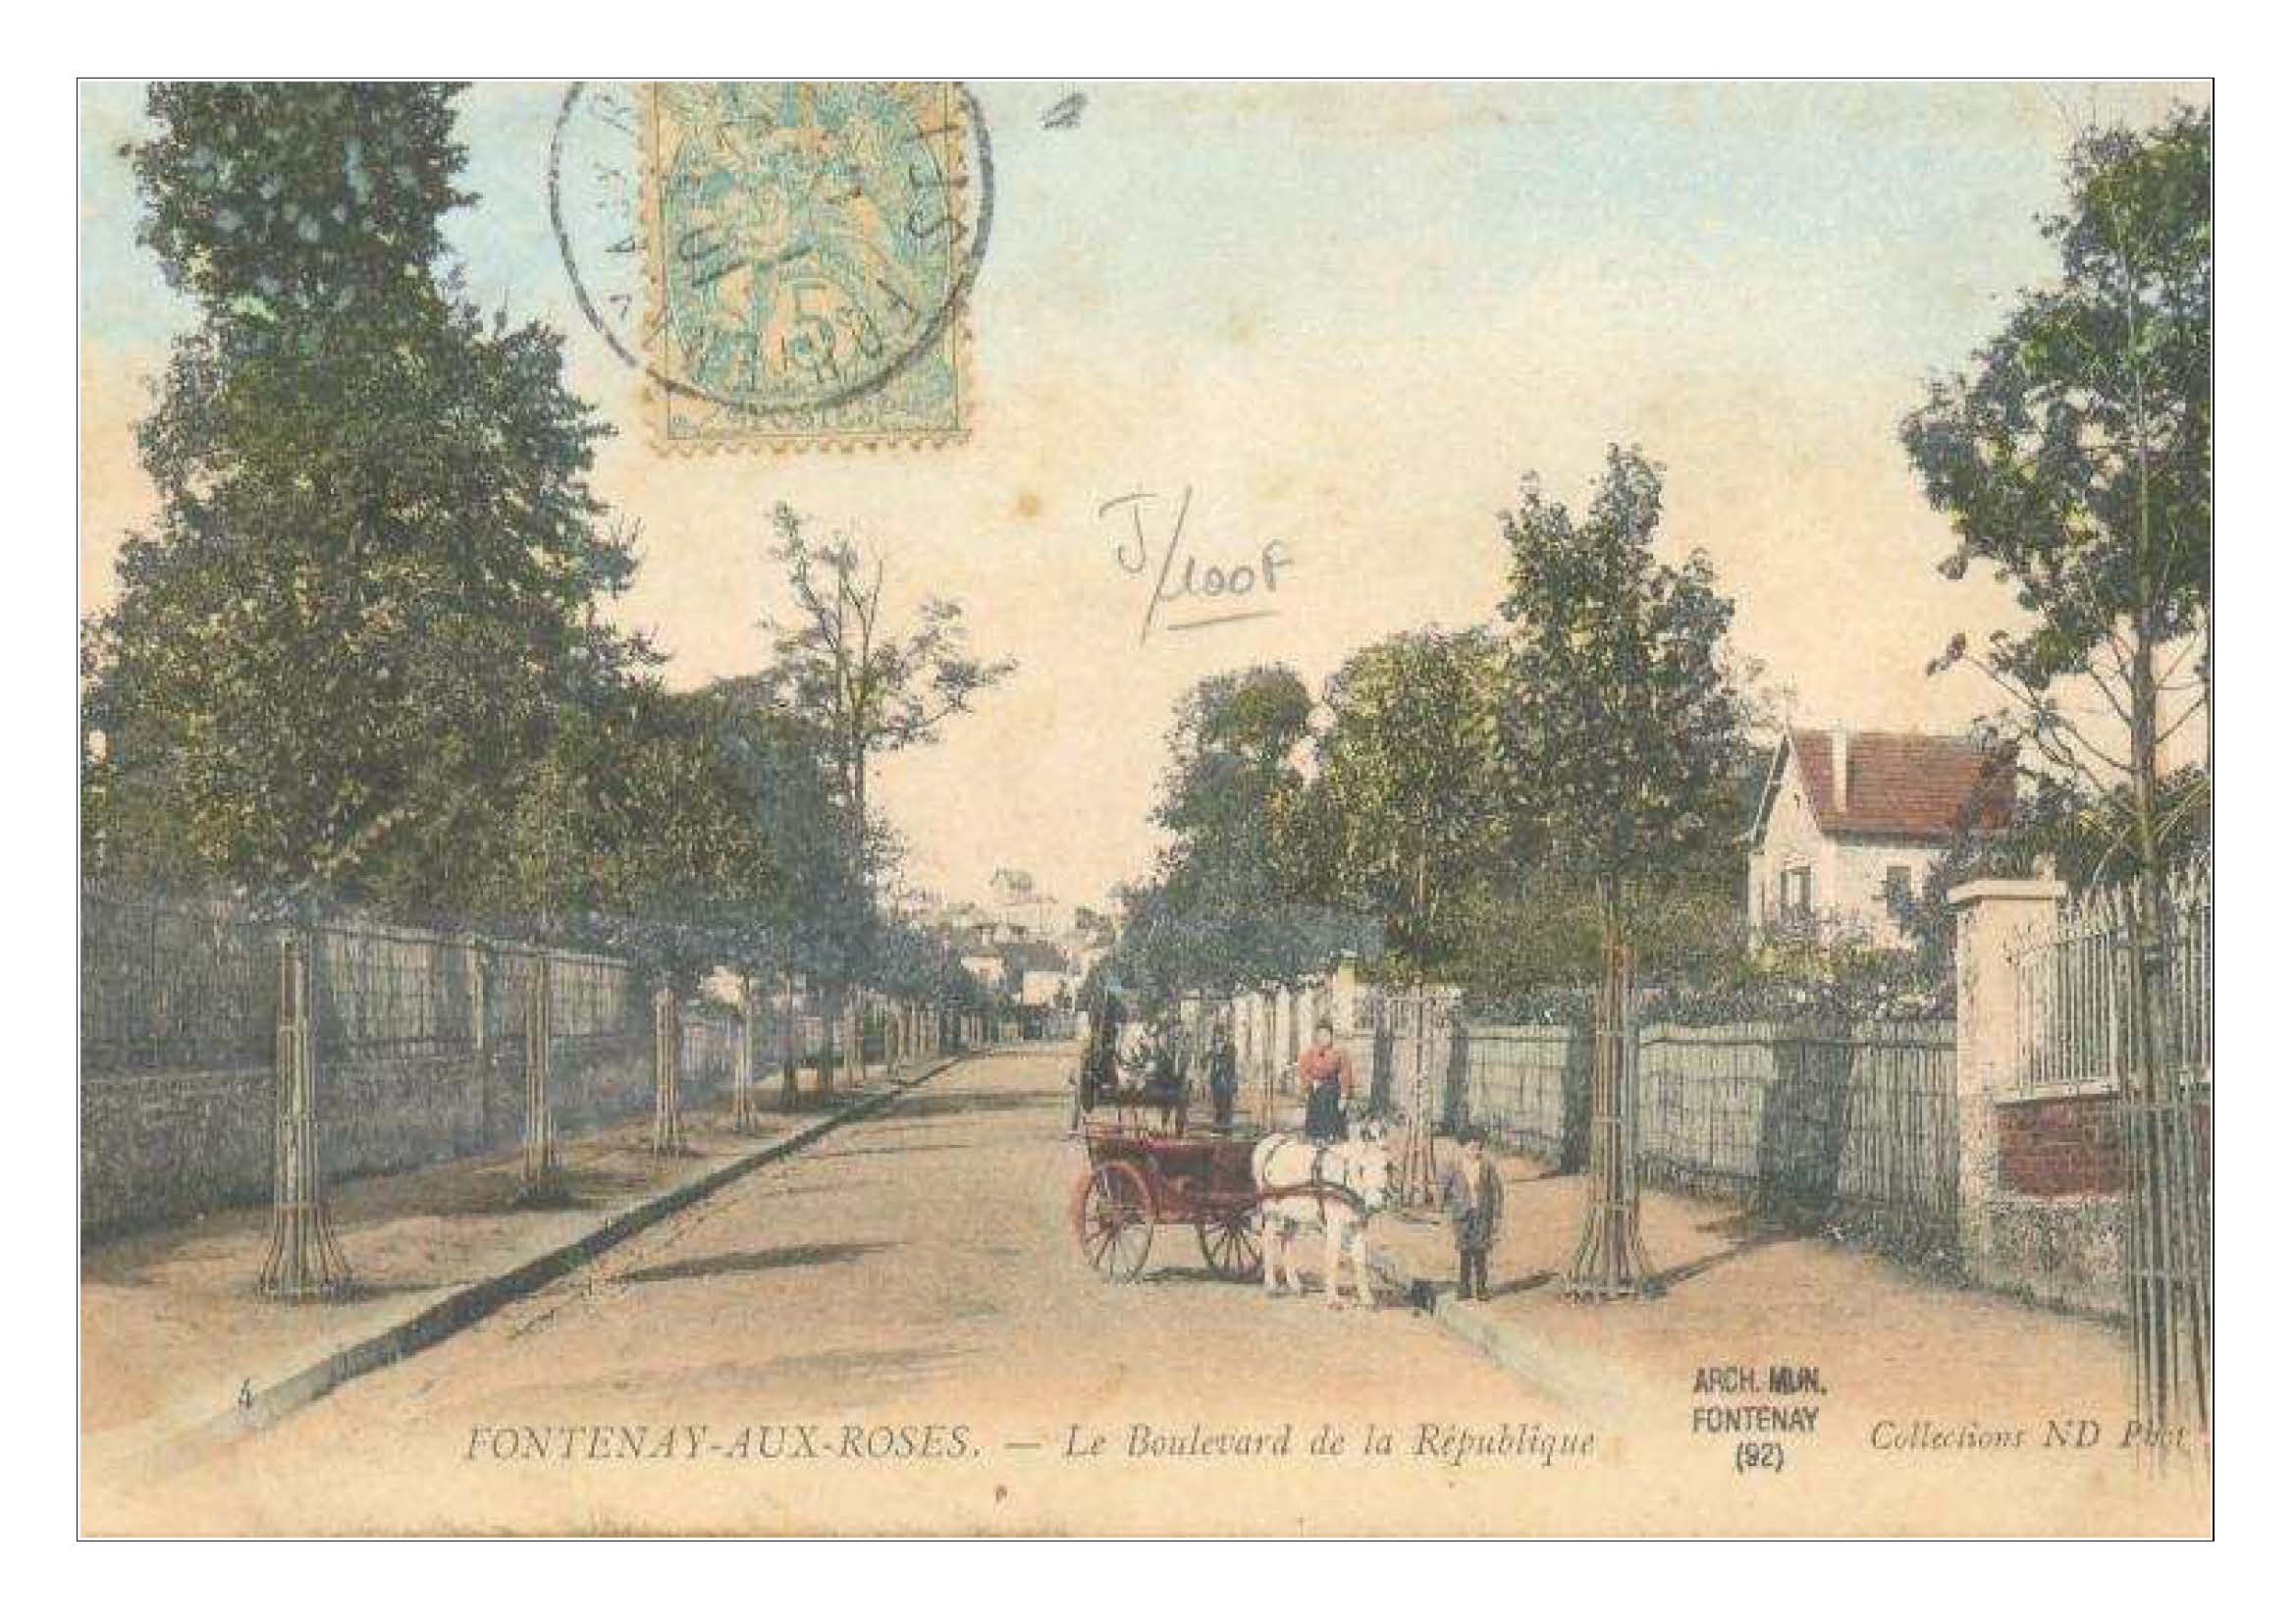 Le boulevard de la République inauguré en 1901 et destiné à relier la place Carnot à la gare alors récemment construite-03